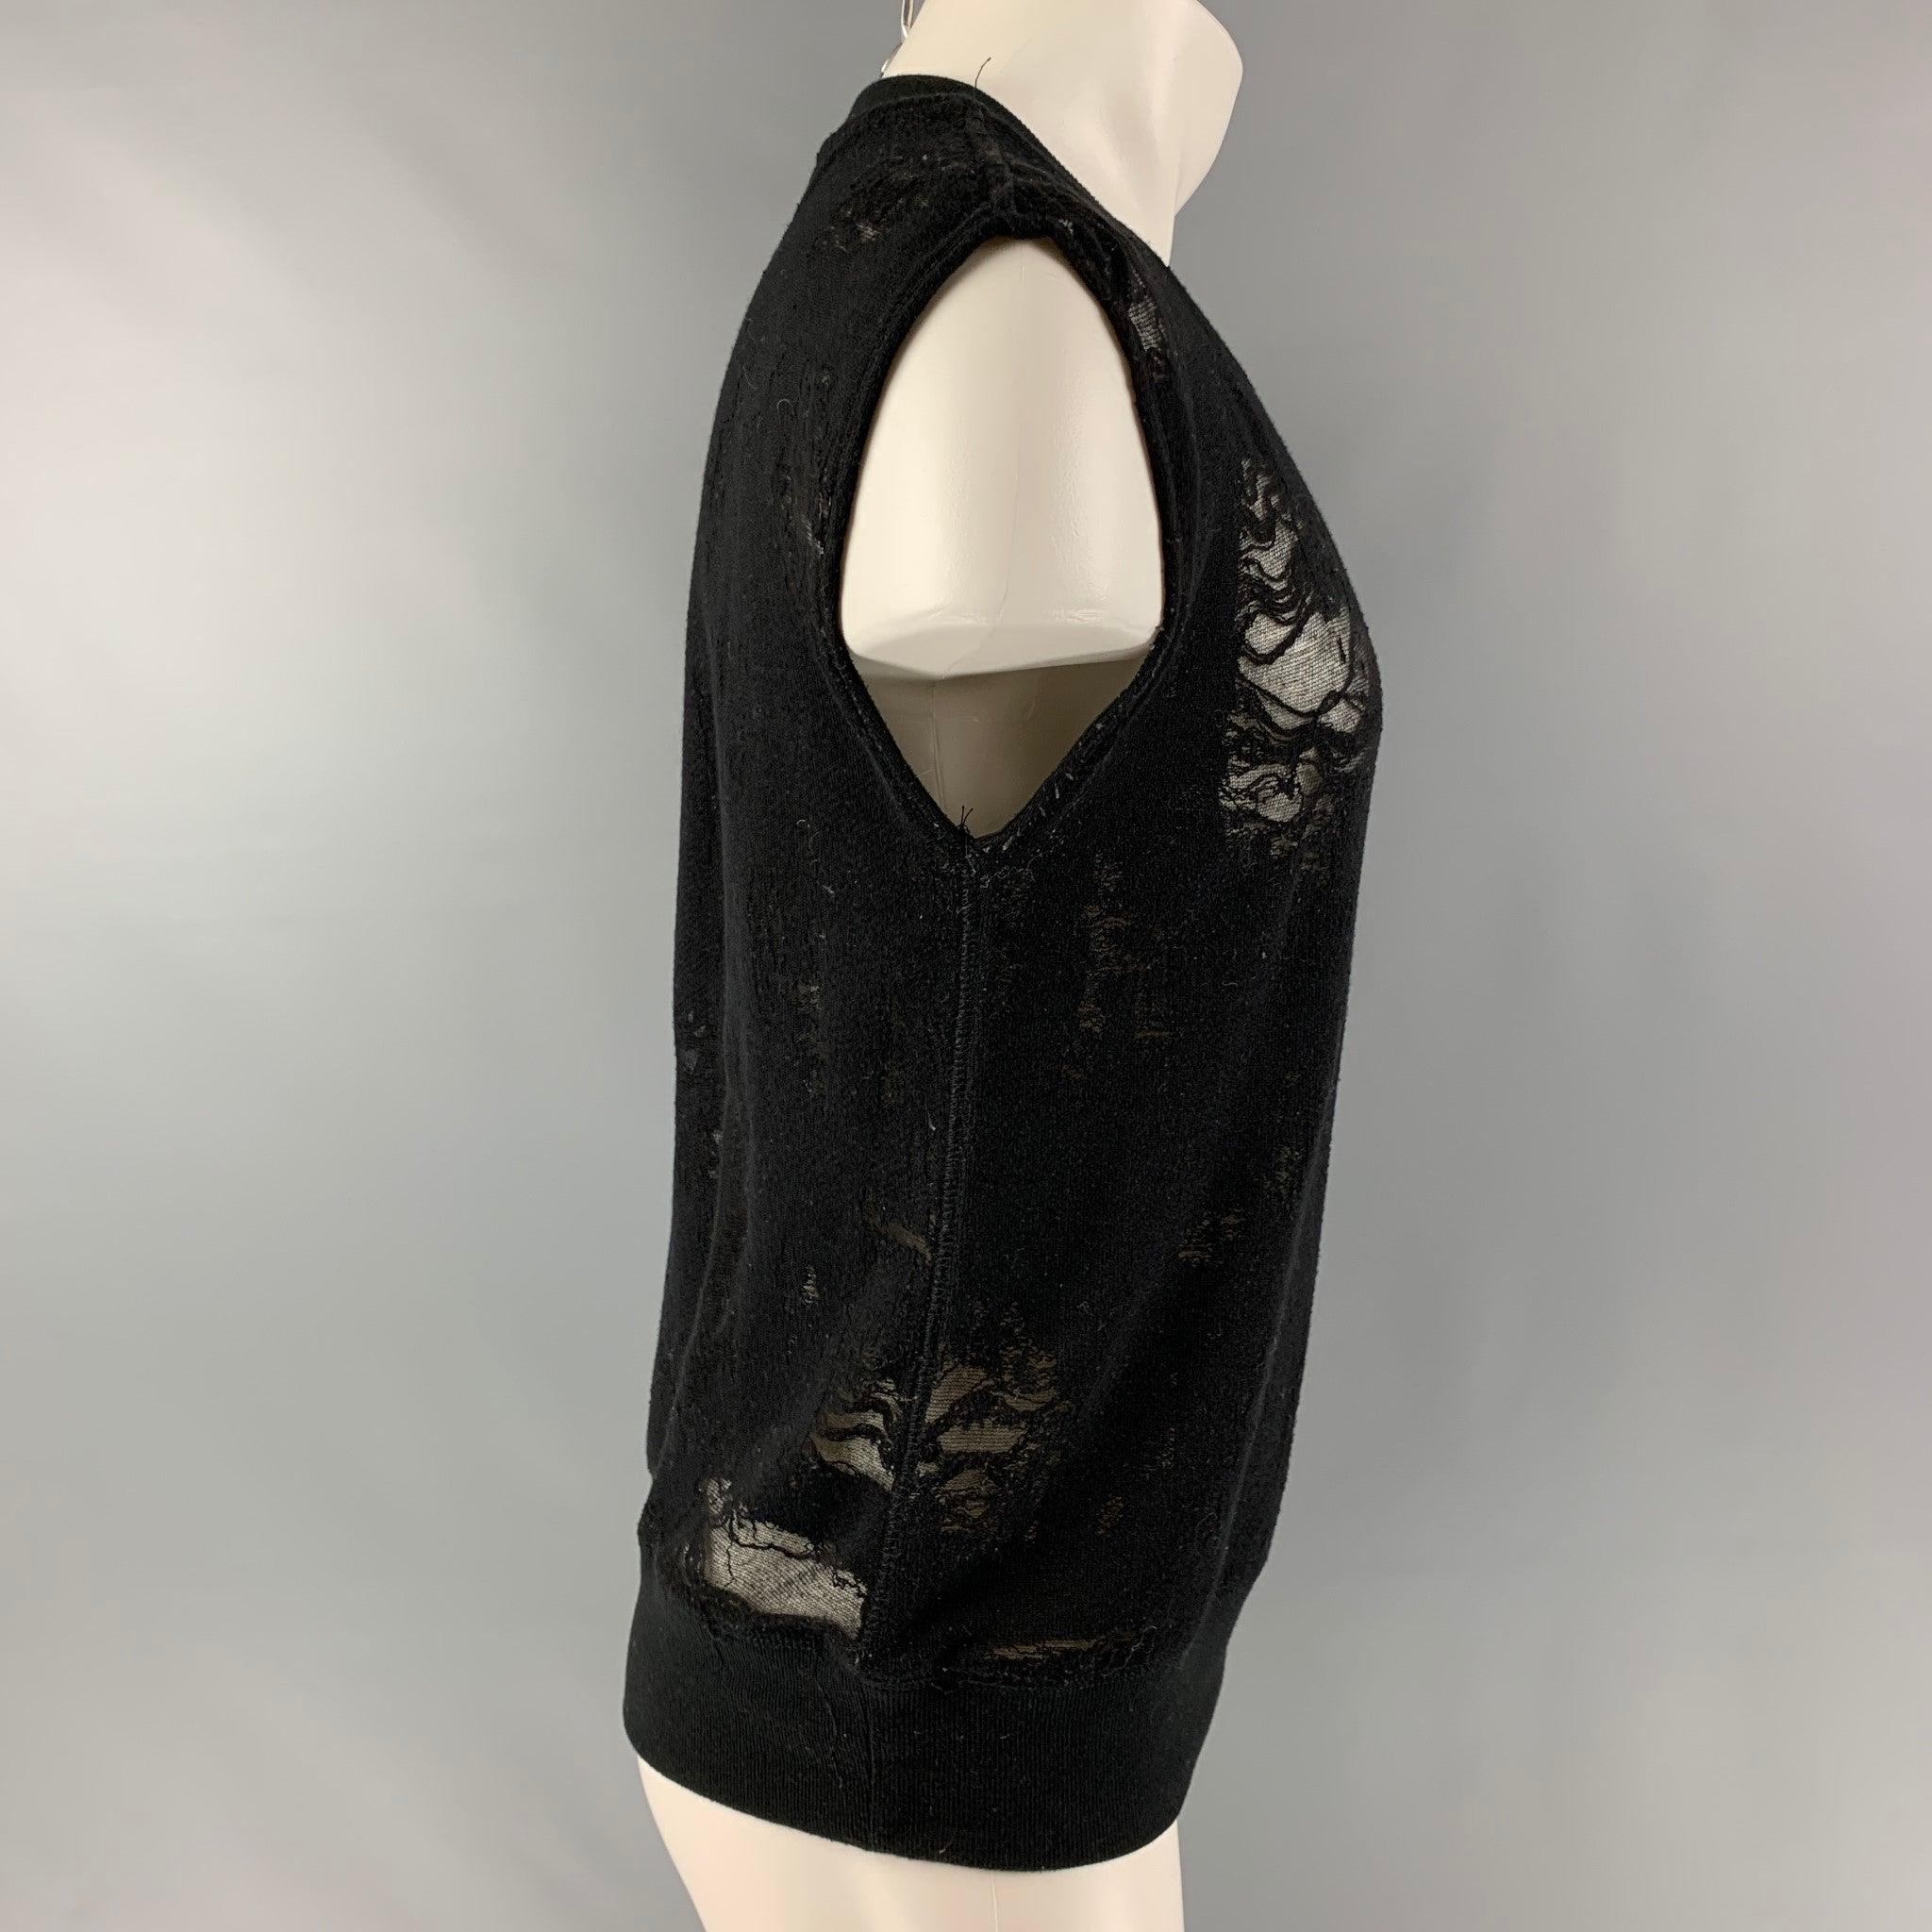 Le pull-over sans manches Nuala d'IRO JEANS est réalisé en jersey de coton mélangé noir partiellement transparent. Il présente un style vieilli et un col ras du cou. Excellent état d'origine.  

Marqué :   S 

Mesures : 
 
Epaule : 20 pouces